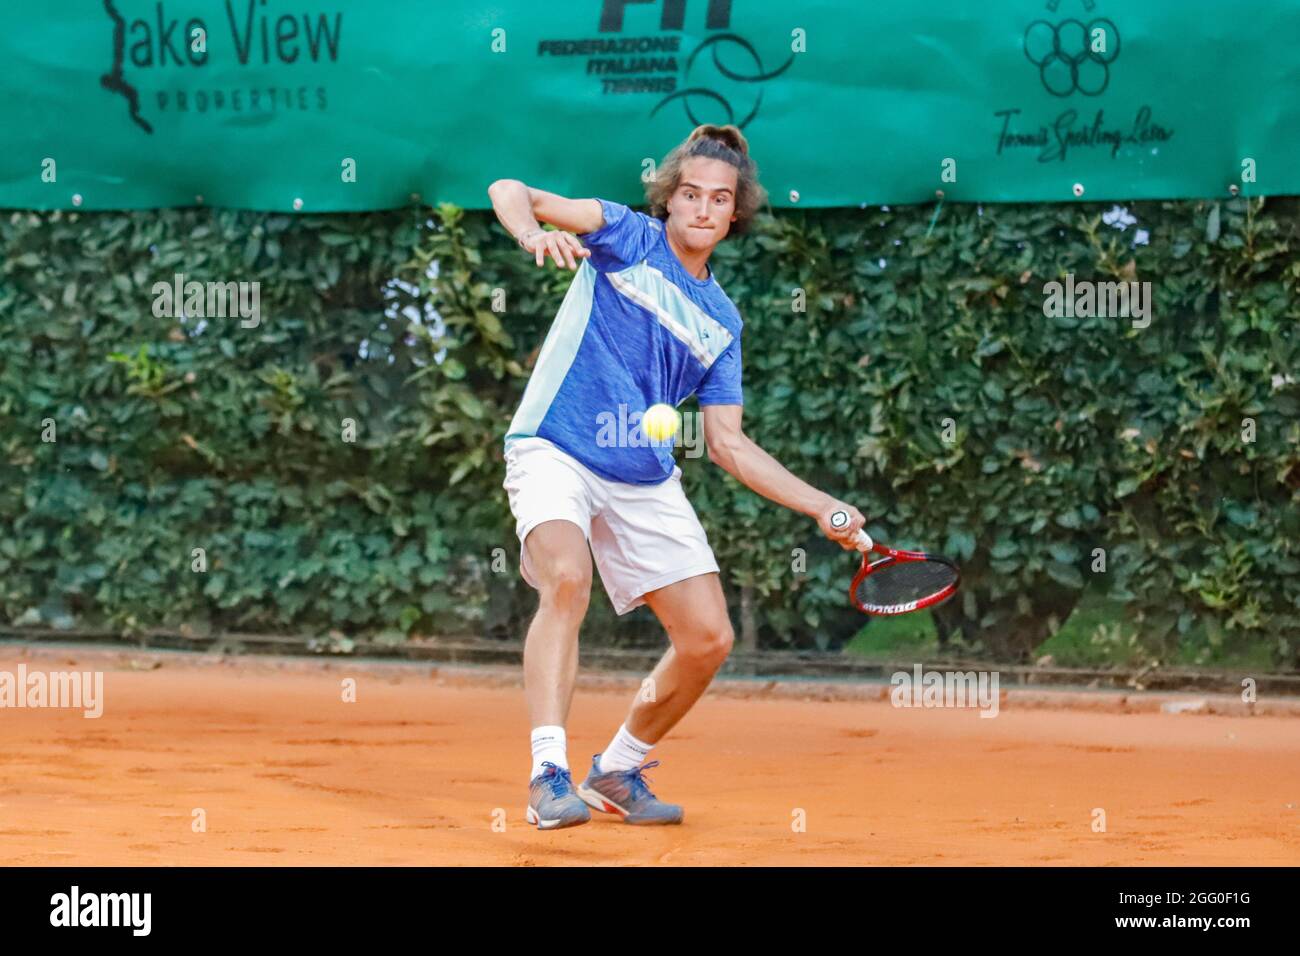 Mattia Bellucci during Lesa Cup 2021 - ITF, Tennis Internationals in Lesa (NO), Italy, August 27 2021 Stock Photo